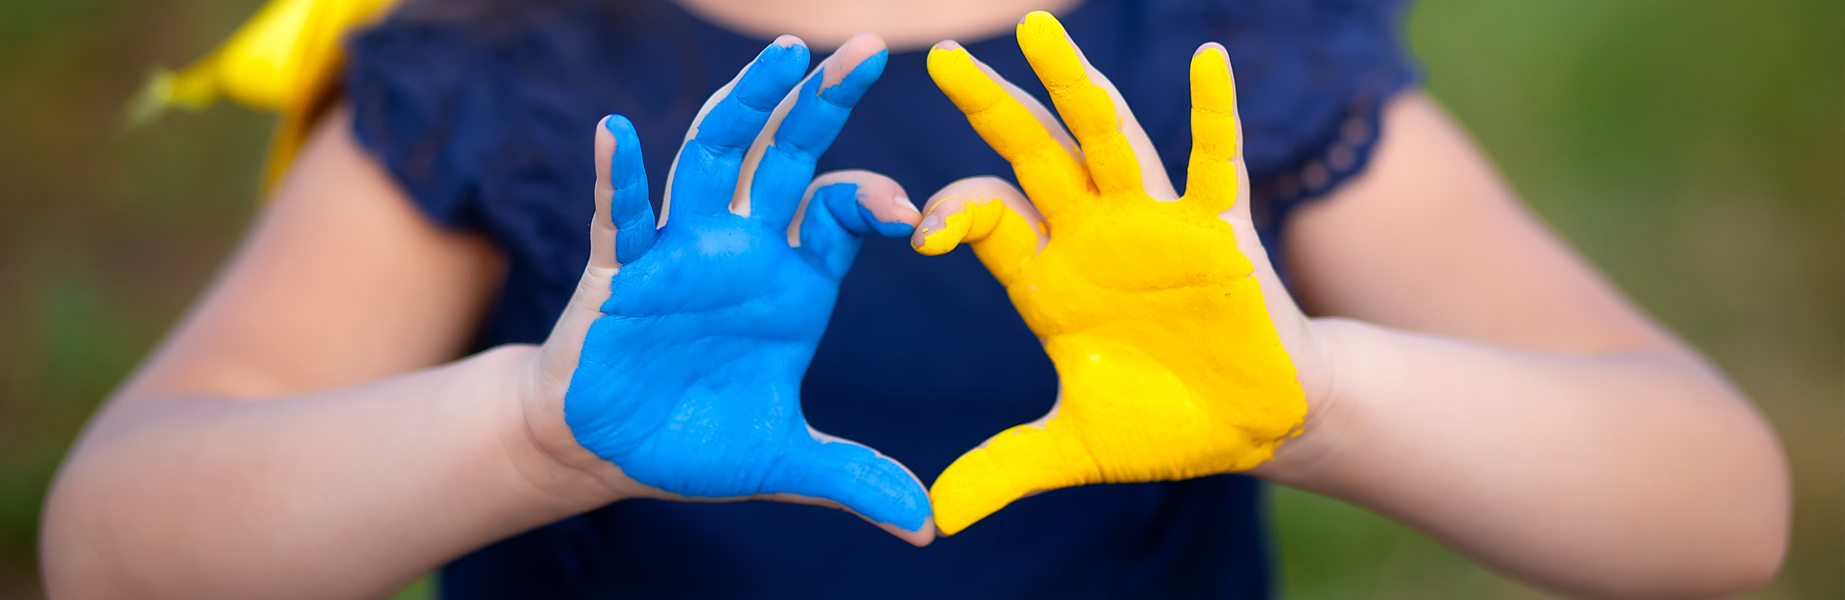 Kinderhände formen ein blau-gelbes Herz